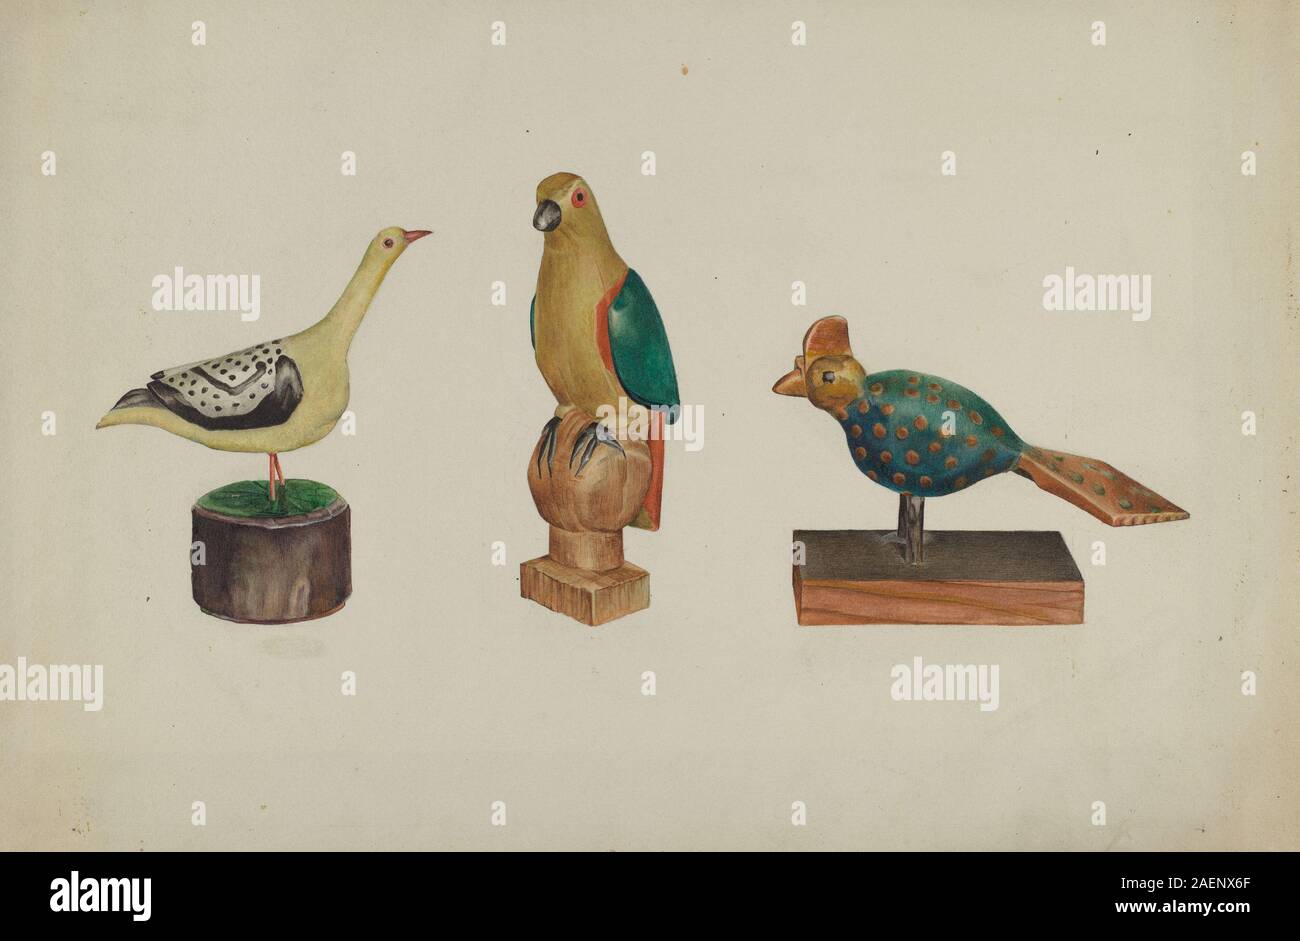 Victor F Muollo, Pa tedesco tre intagliato e dipinto di uccelli, c 1937, Pa. tedesco tre intagliati e dipinti uccelli; c. 1937 Foto Stock